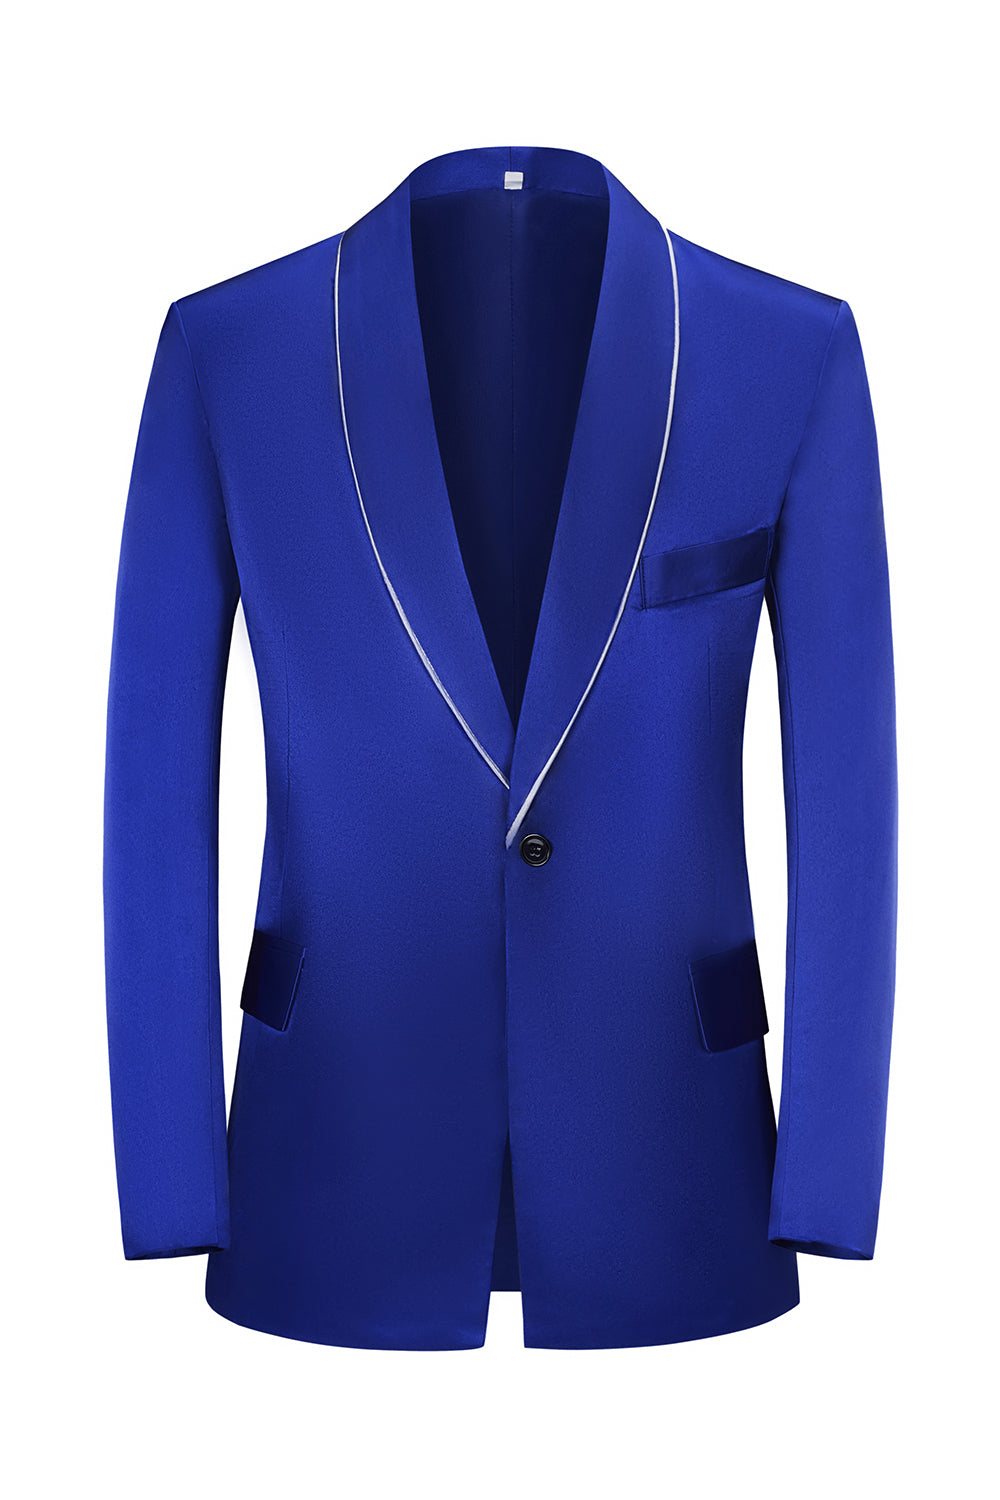 Royal Blue Peak Lapel 3 Piece Men's Formal Suits